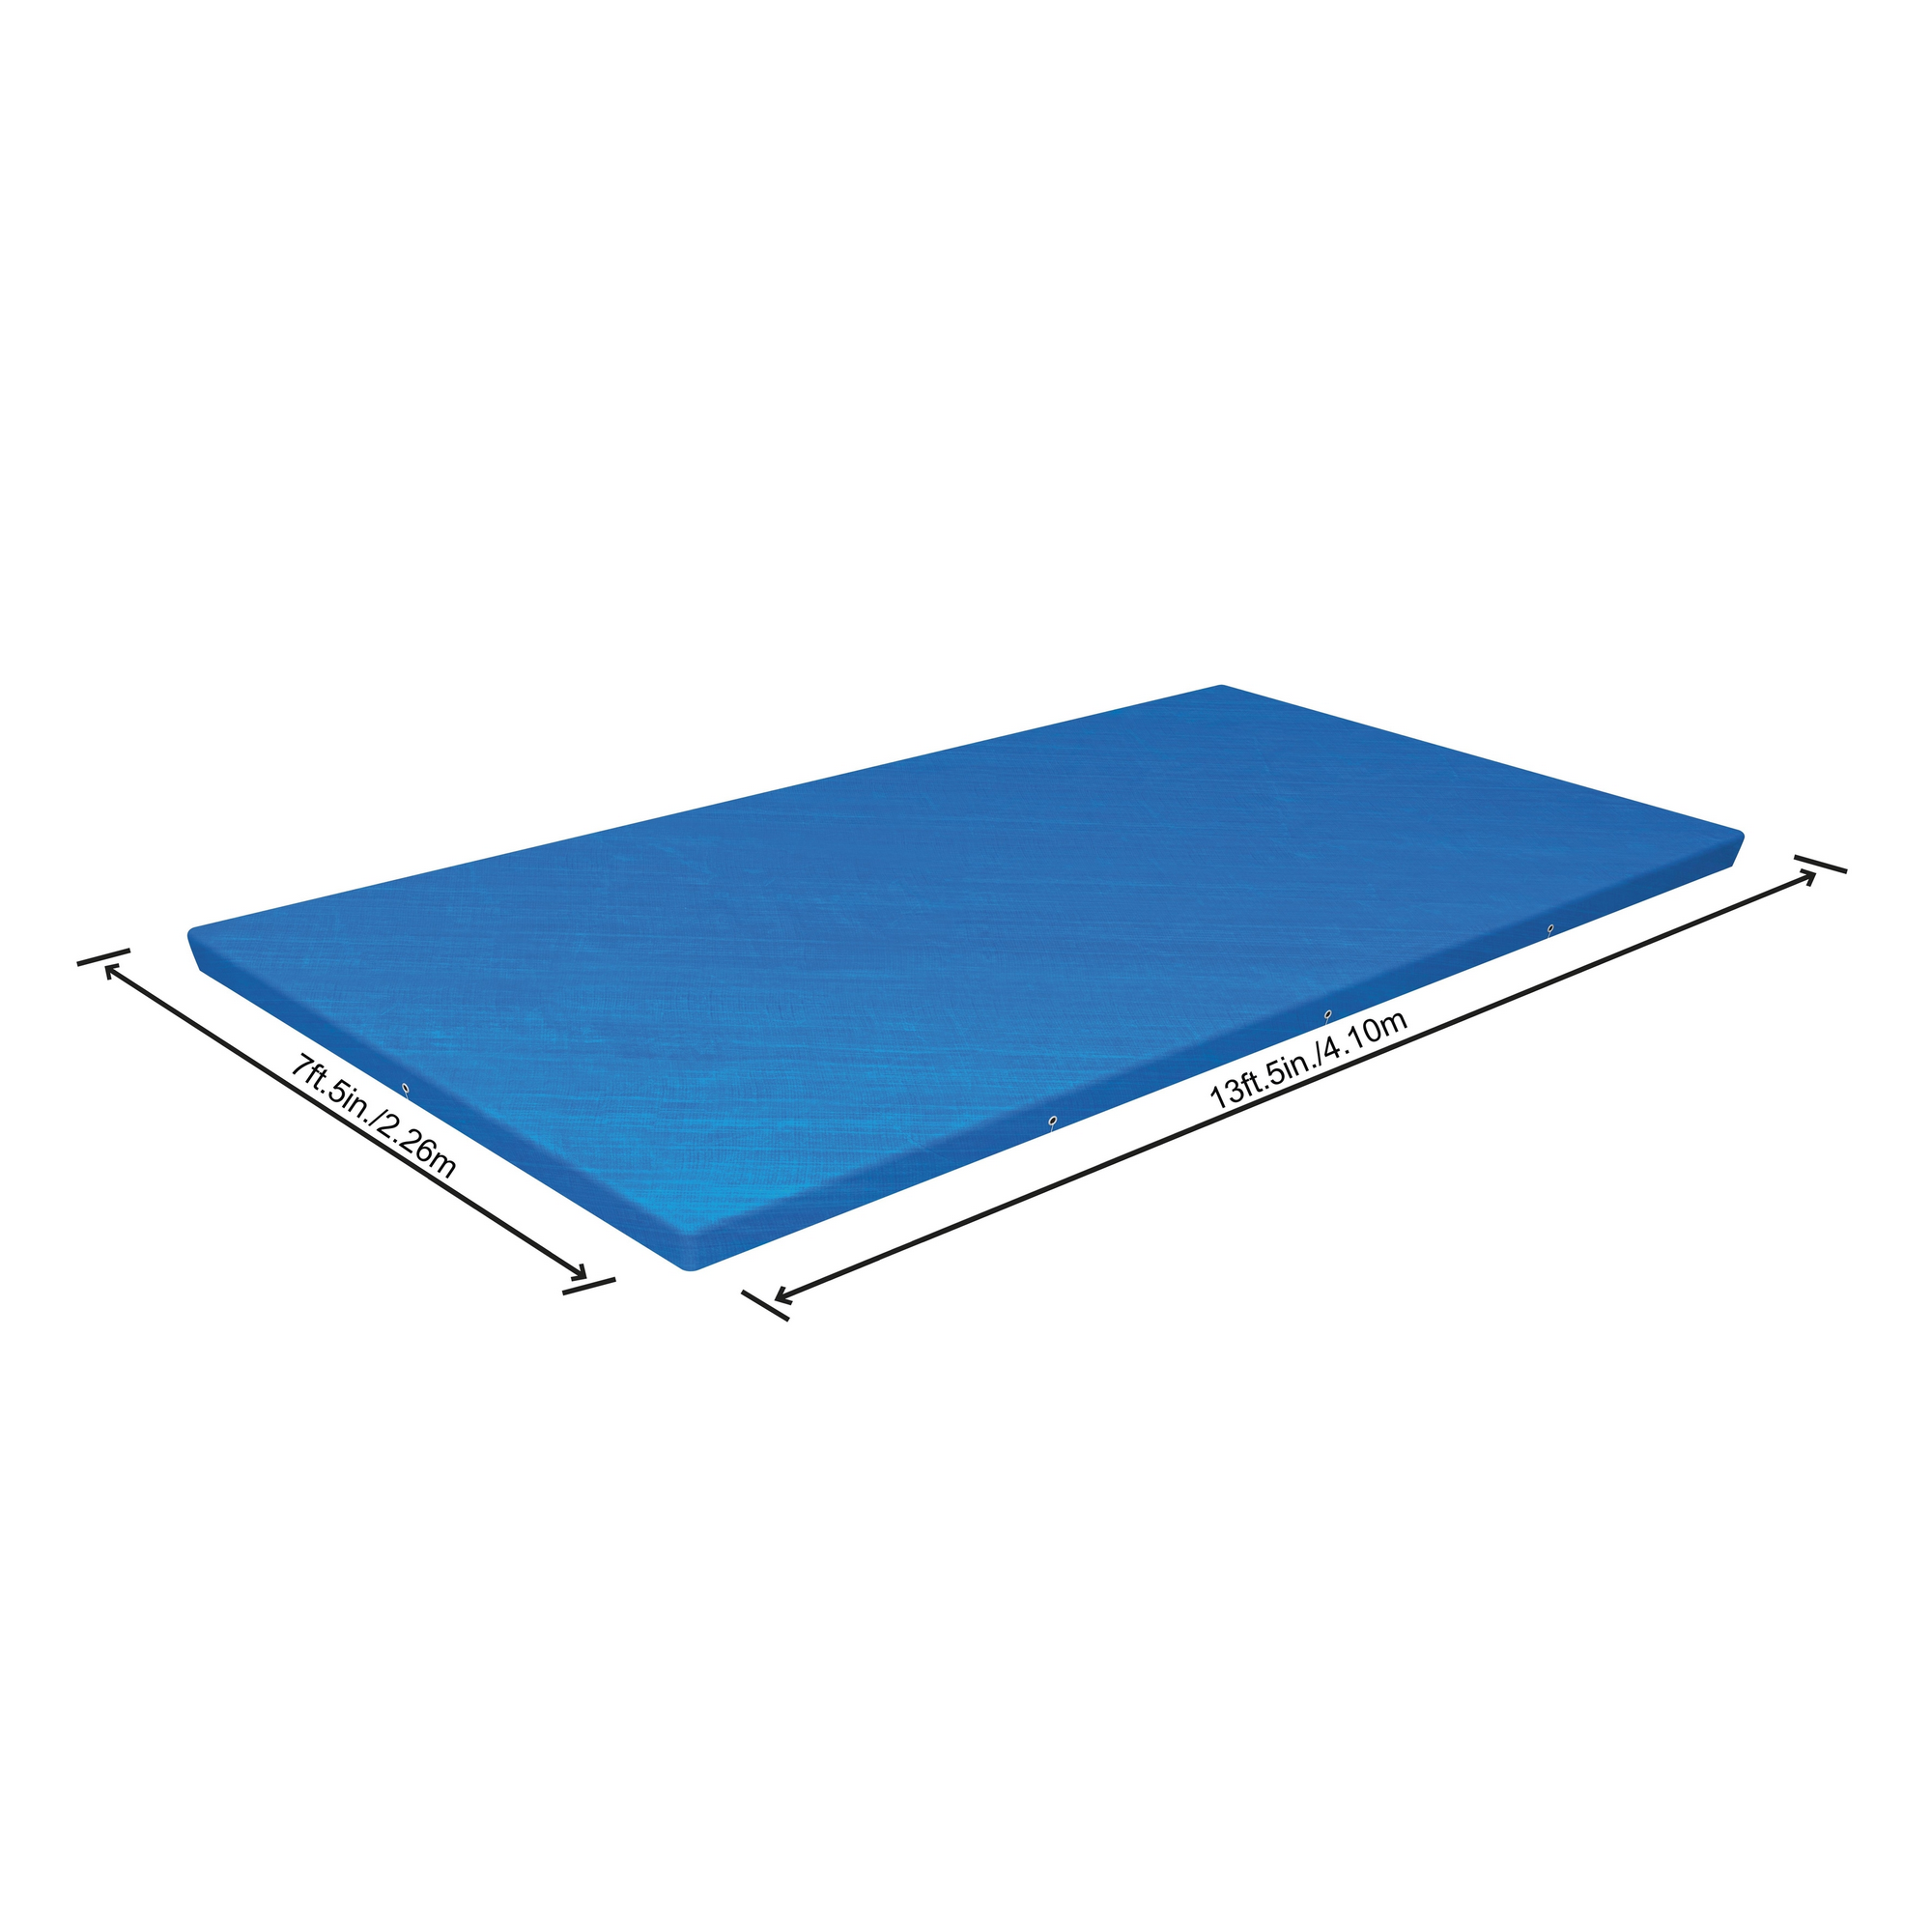 Abdeckplane für Steel Frame Pool, Größe: 410 x 226 cm + product picture